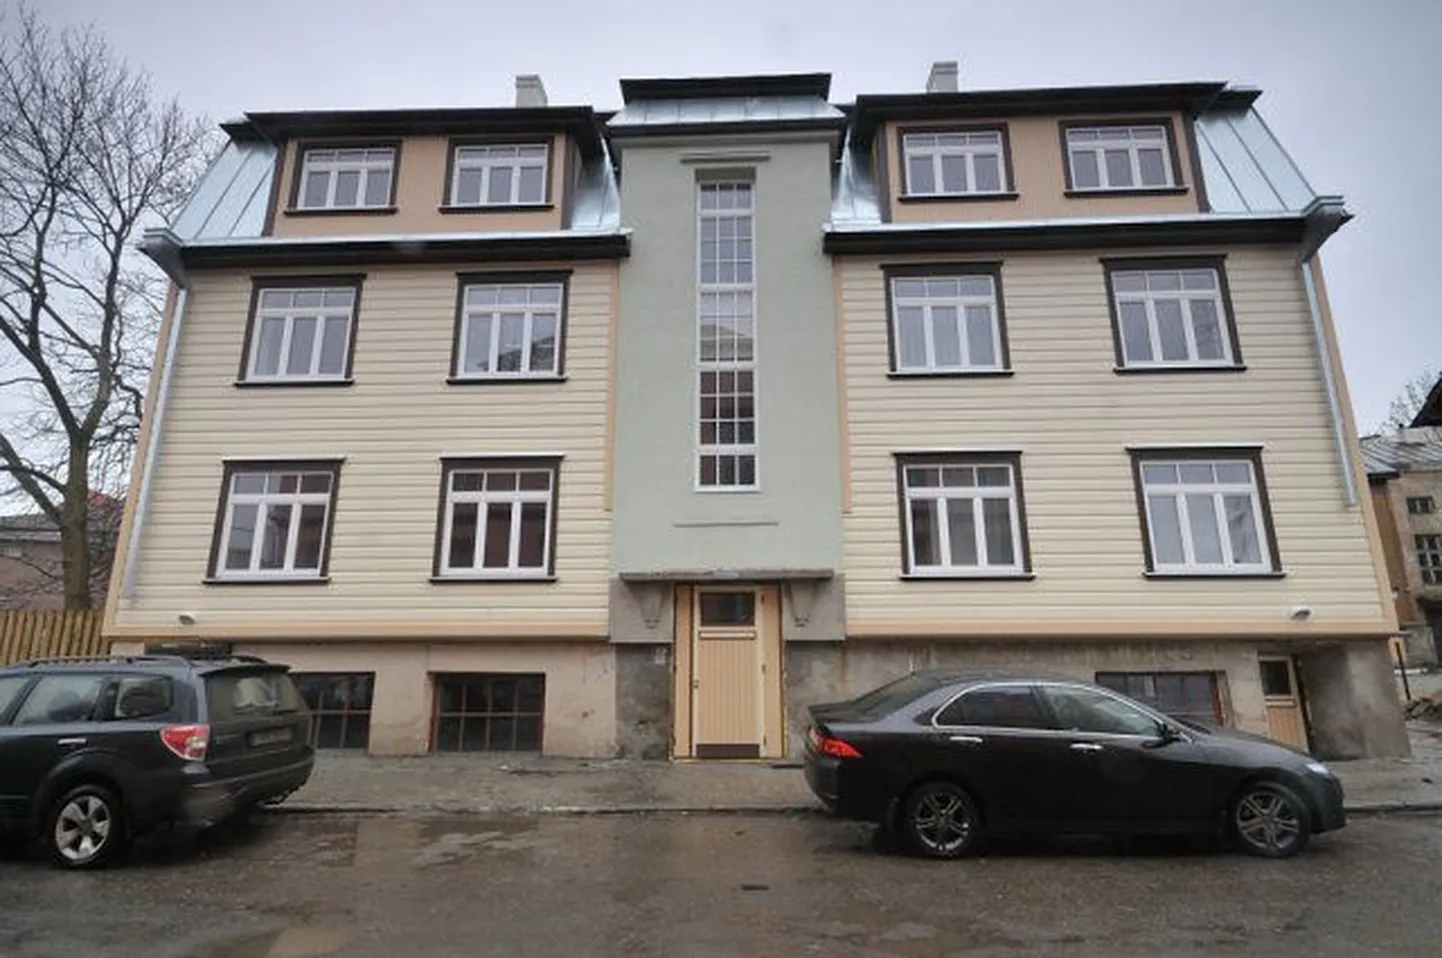 Üks väheseid säilinud Tallinna-tüüpi maju Keldrimäe asumis aadressiga Mardi 14. Ehitatud arhitekt Karl Taravse projekti järgi 1930. aastate keskpaigas..